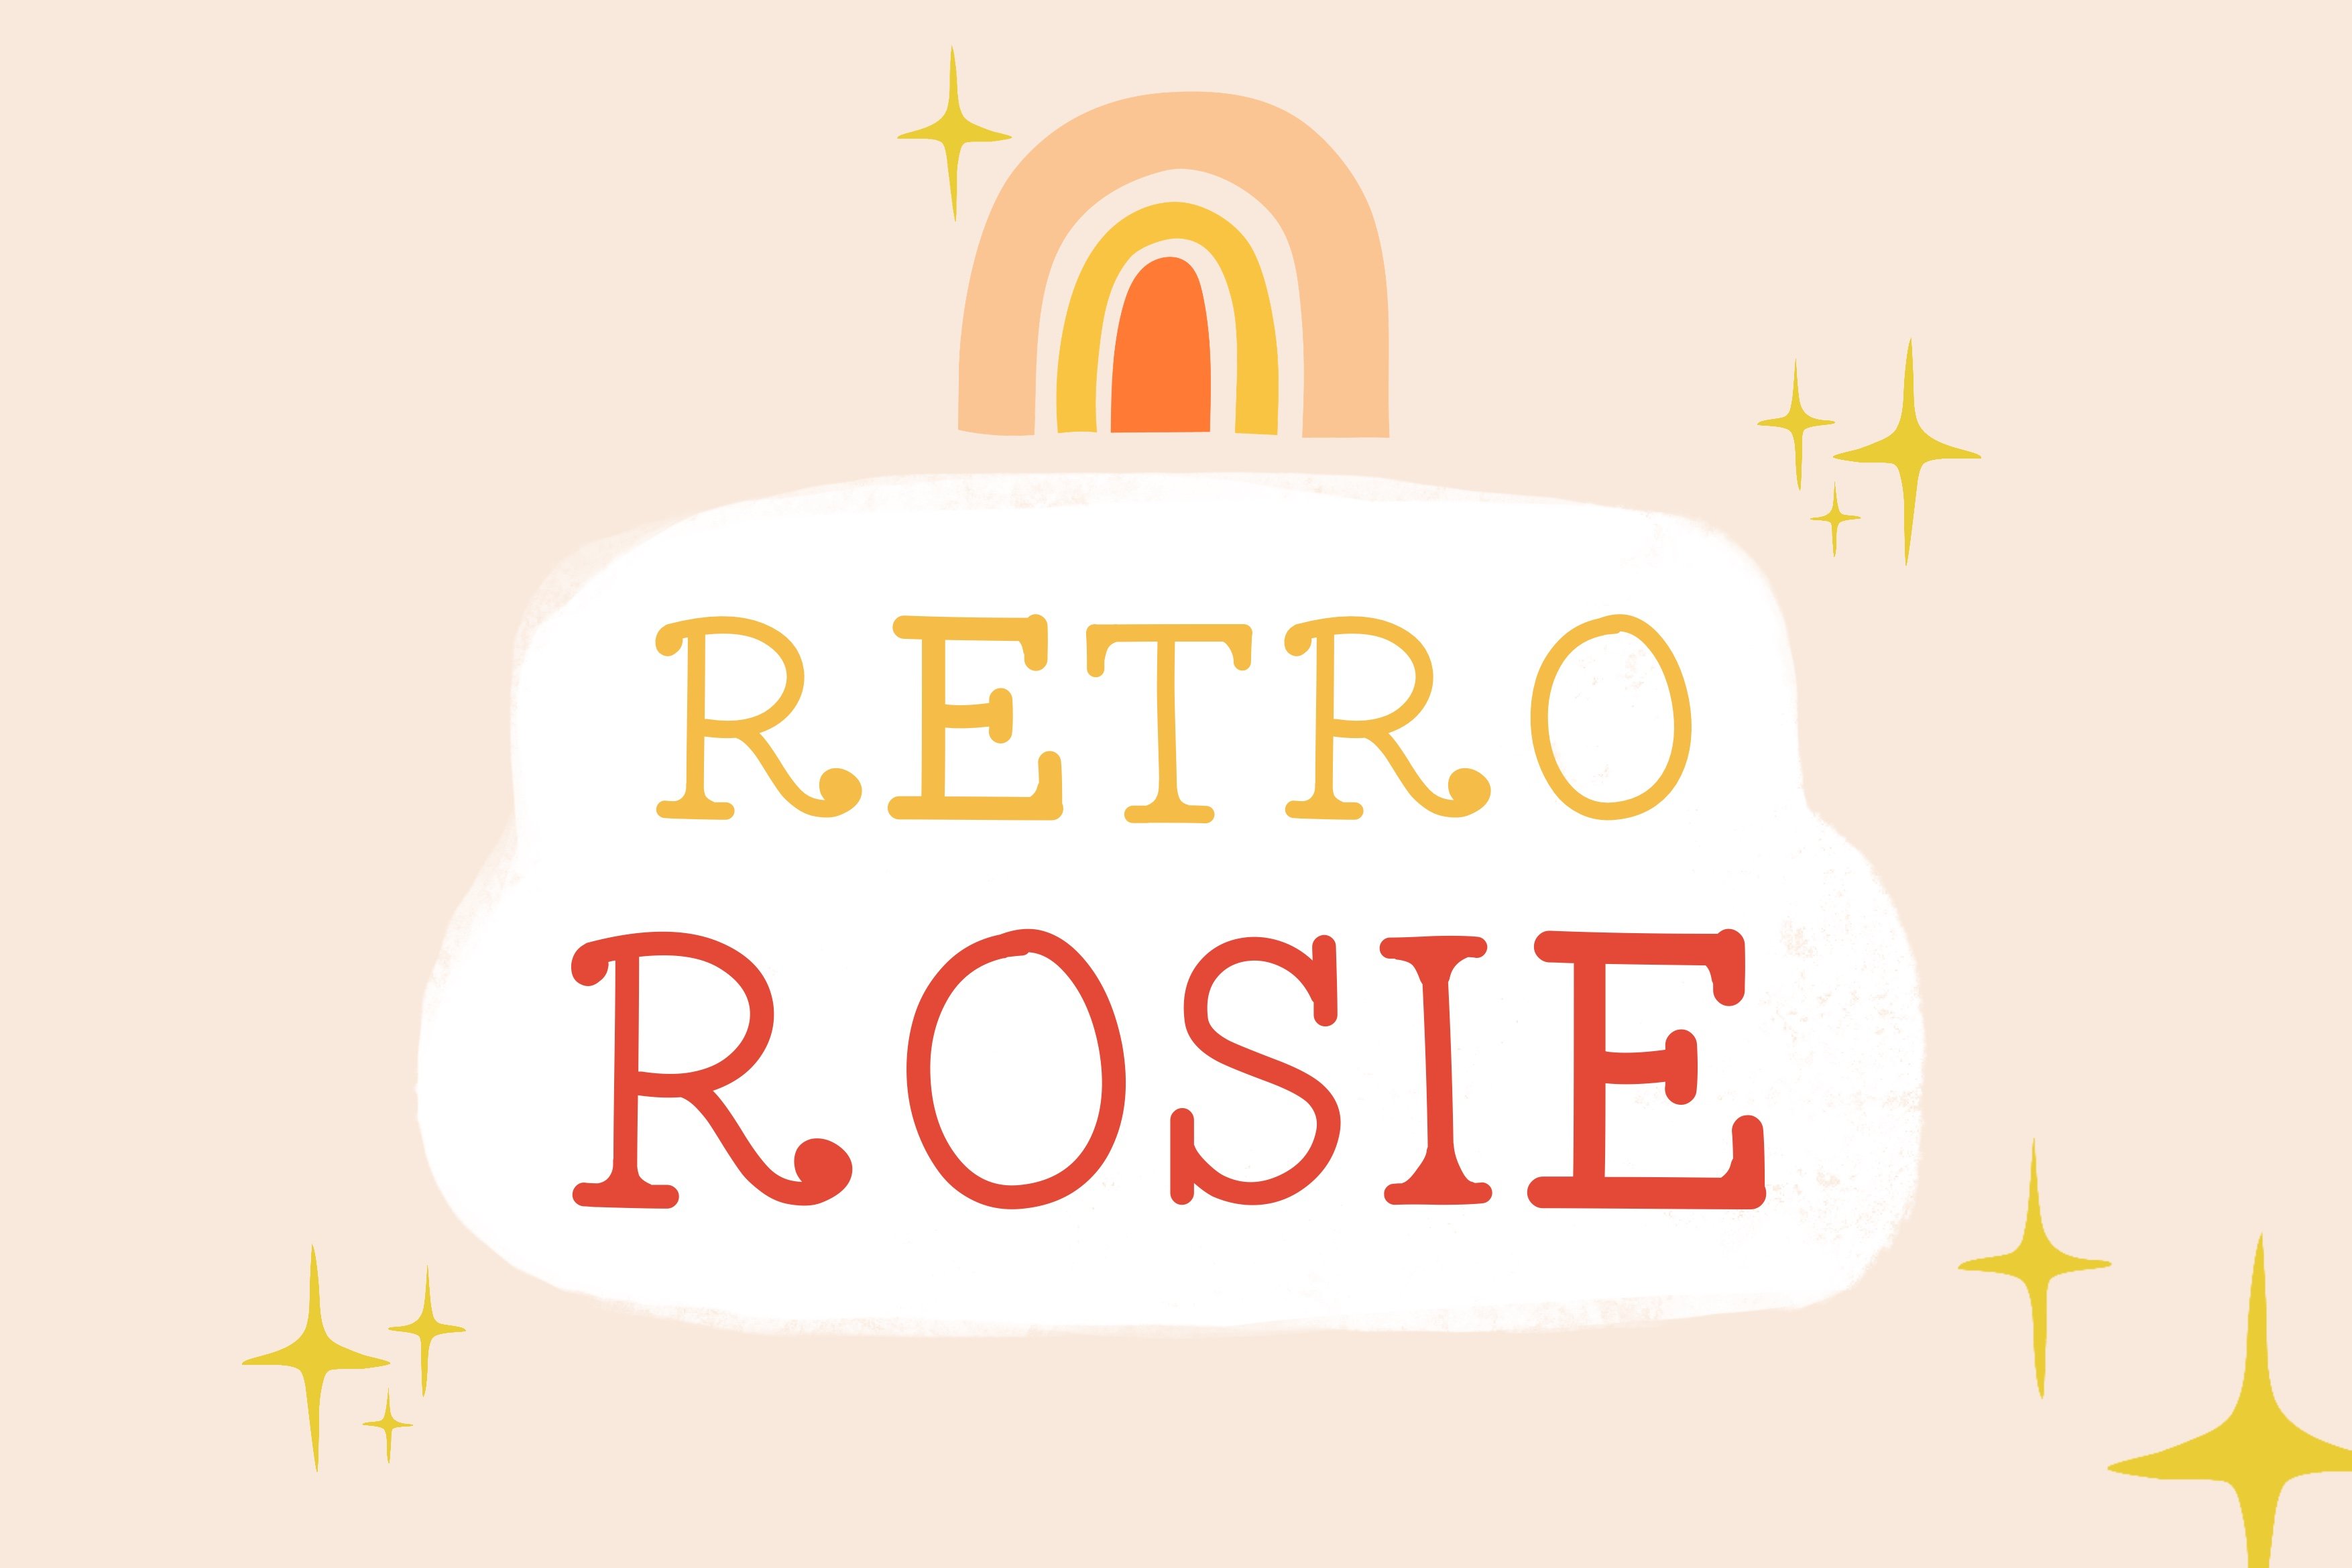 Retro Rosie Font cover image.